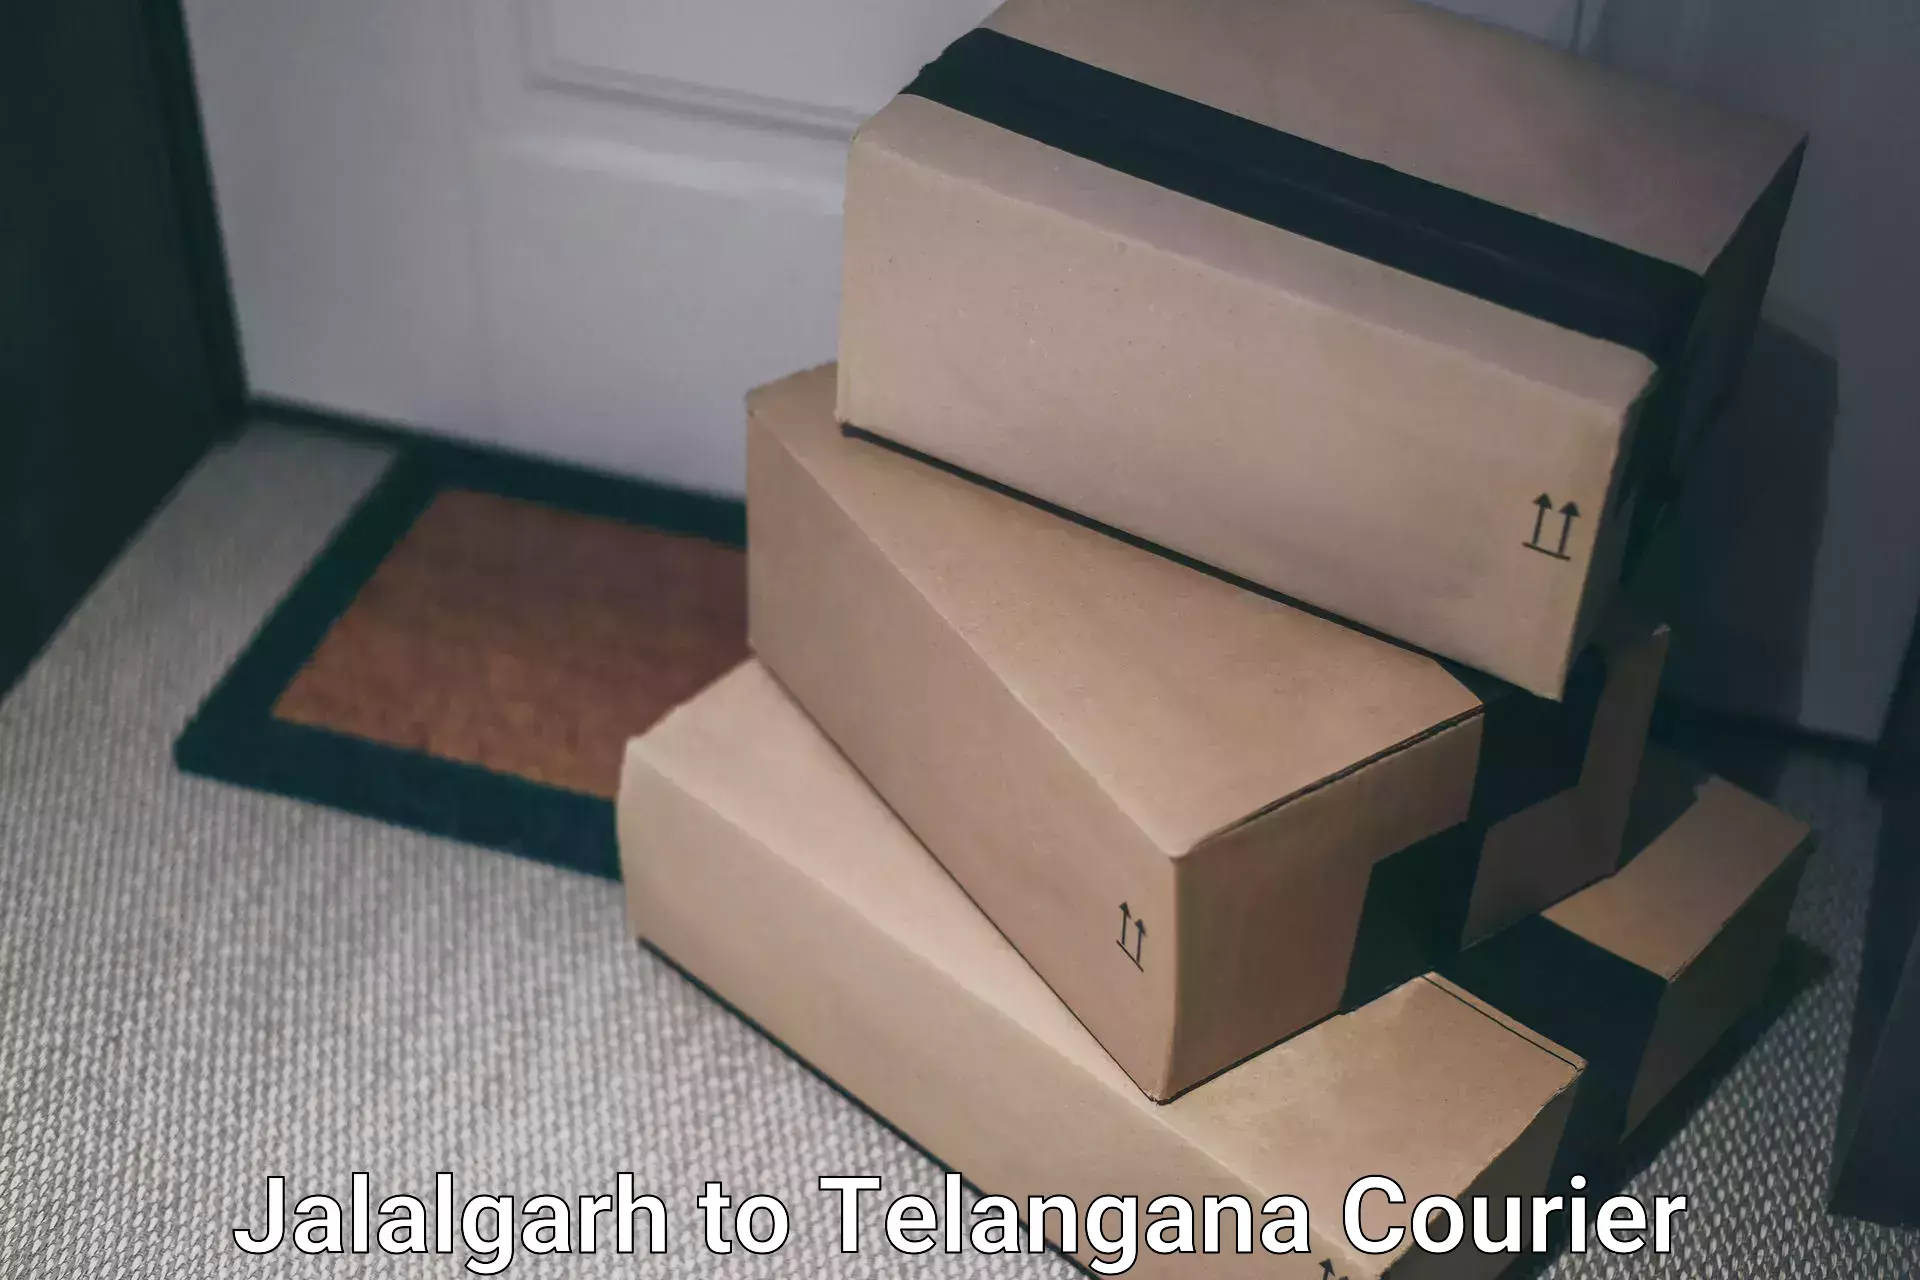 Expedited shipping solutions Jalalgarh to Thungathurthi